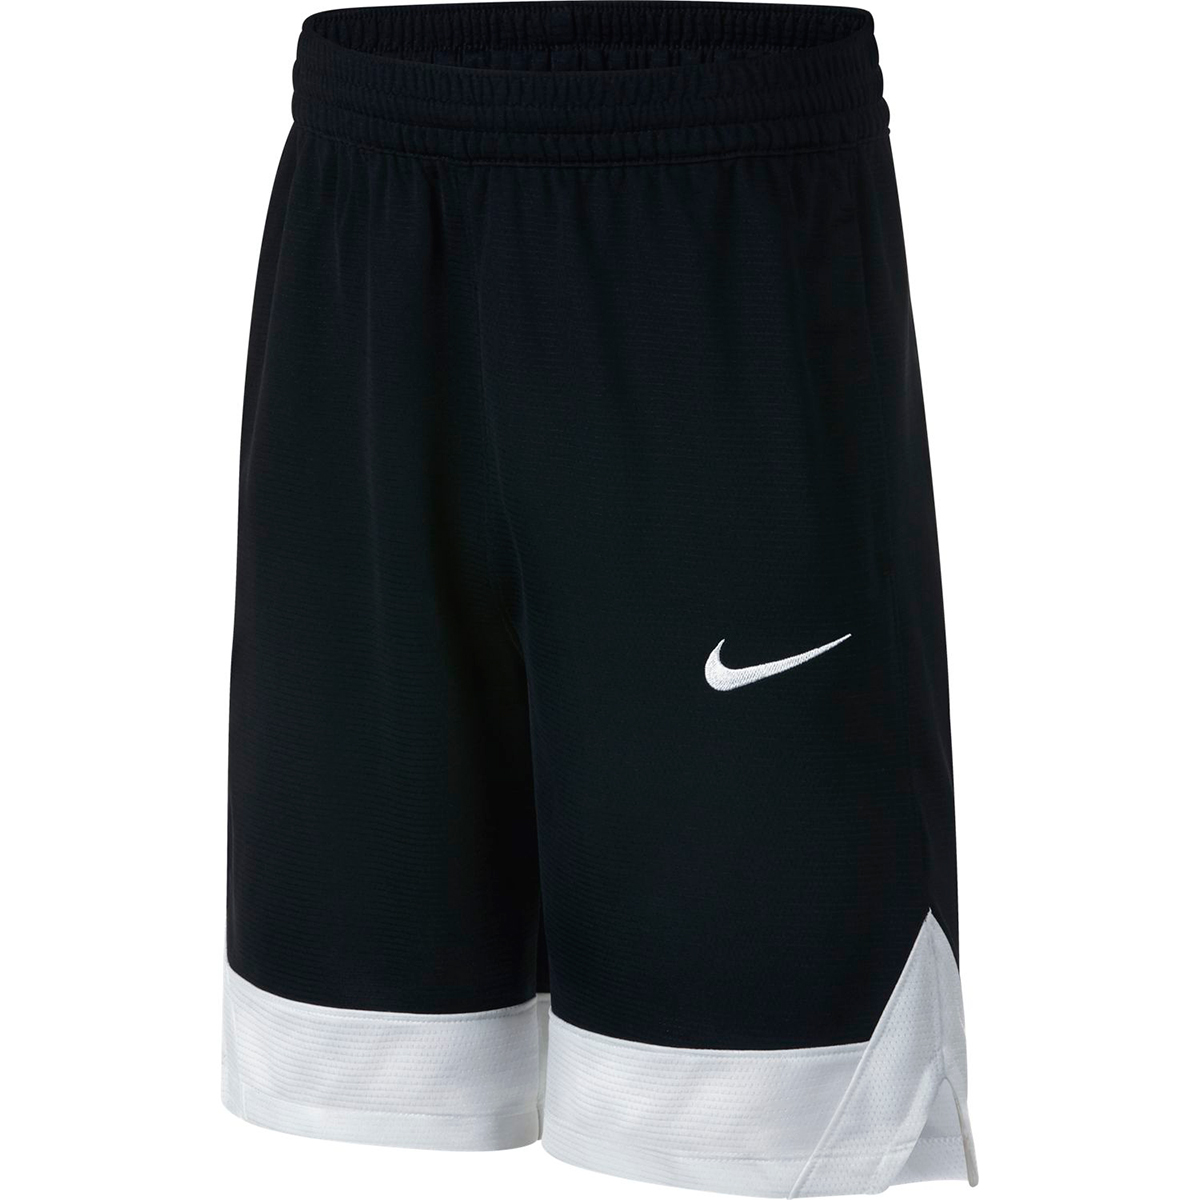 Черные шорты найк. Баскетбольные шорты Nike Dri-Fit. Баскетбольные шорты Nike Dry. Шорты Nike арт AJ-7777-010. Шорты Nike Basketball White.